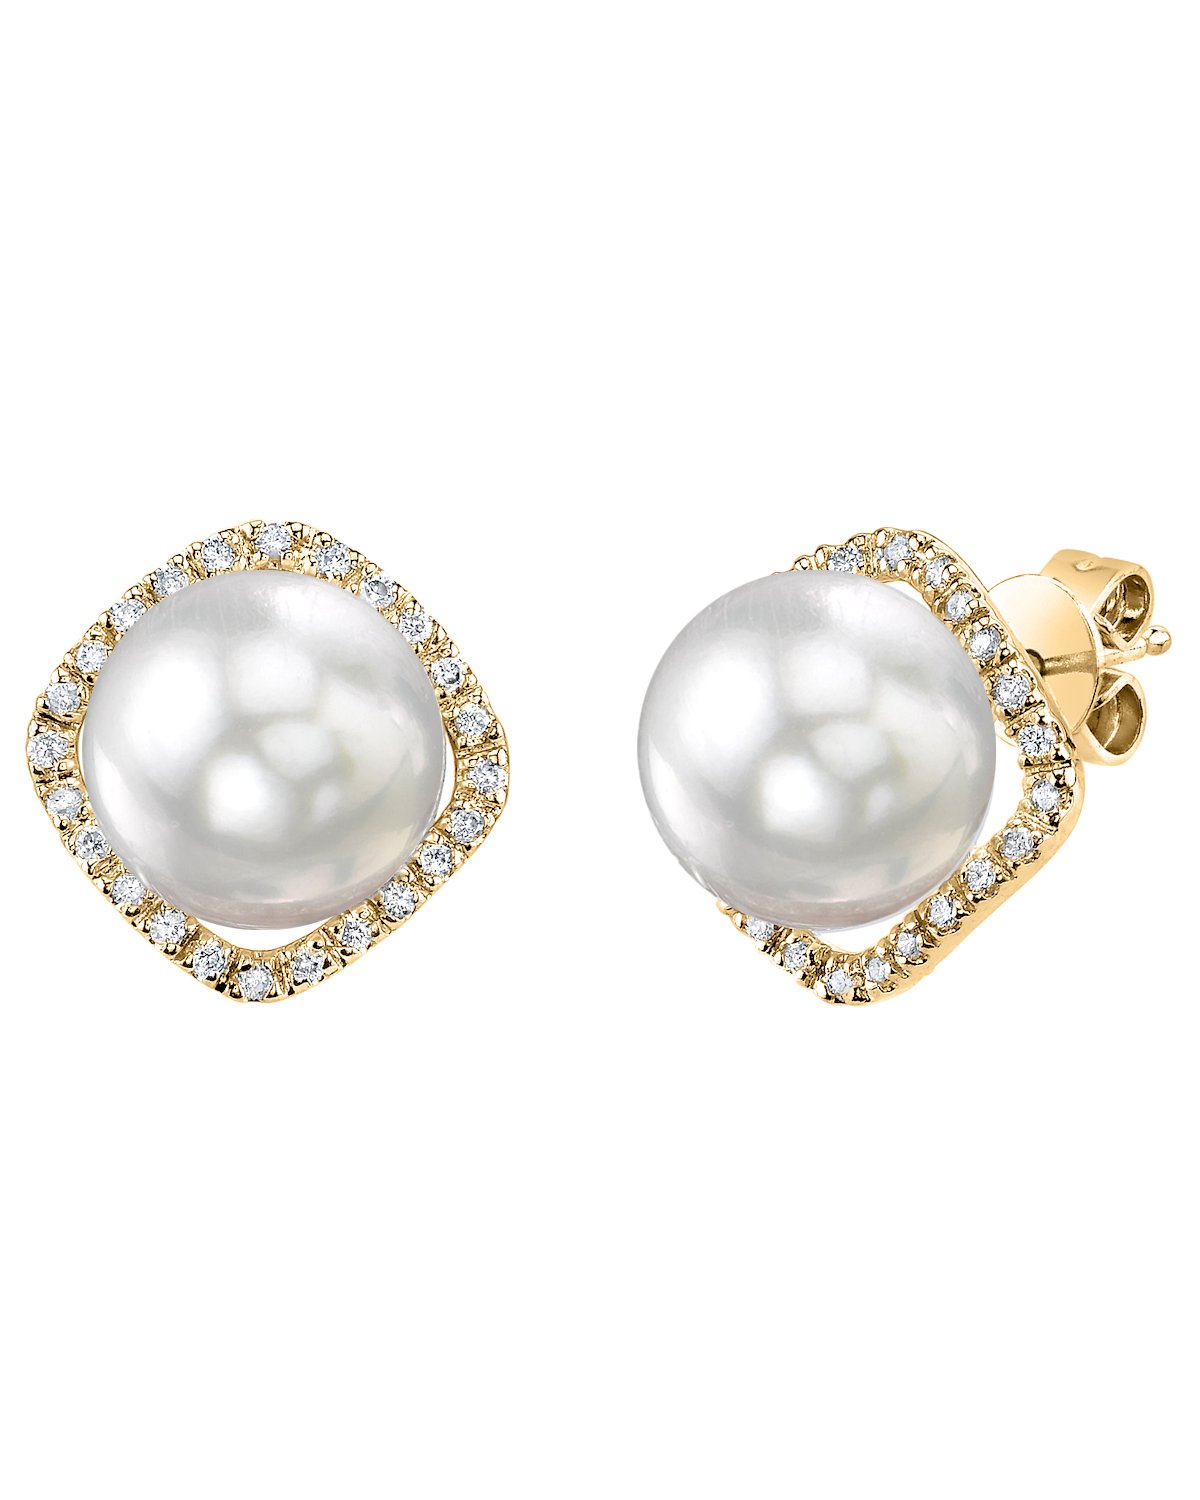 White South Sea Pearl & Diamond Ella Earrings - Model Image